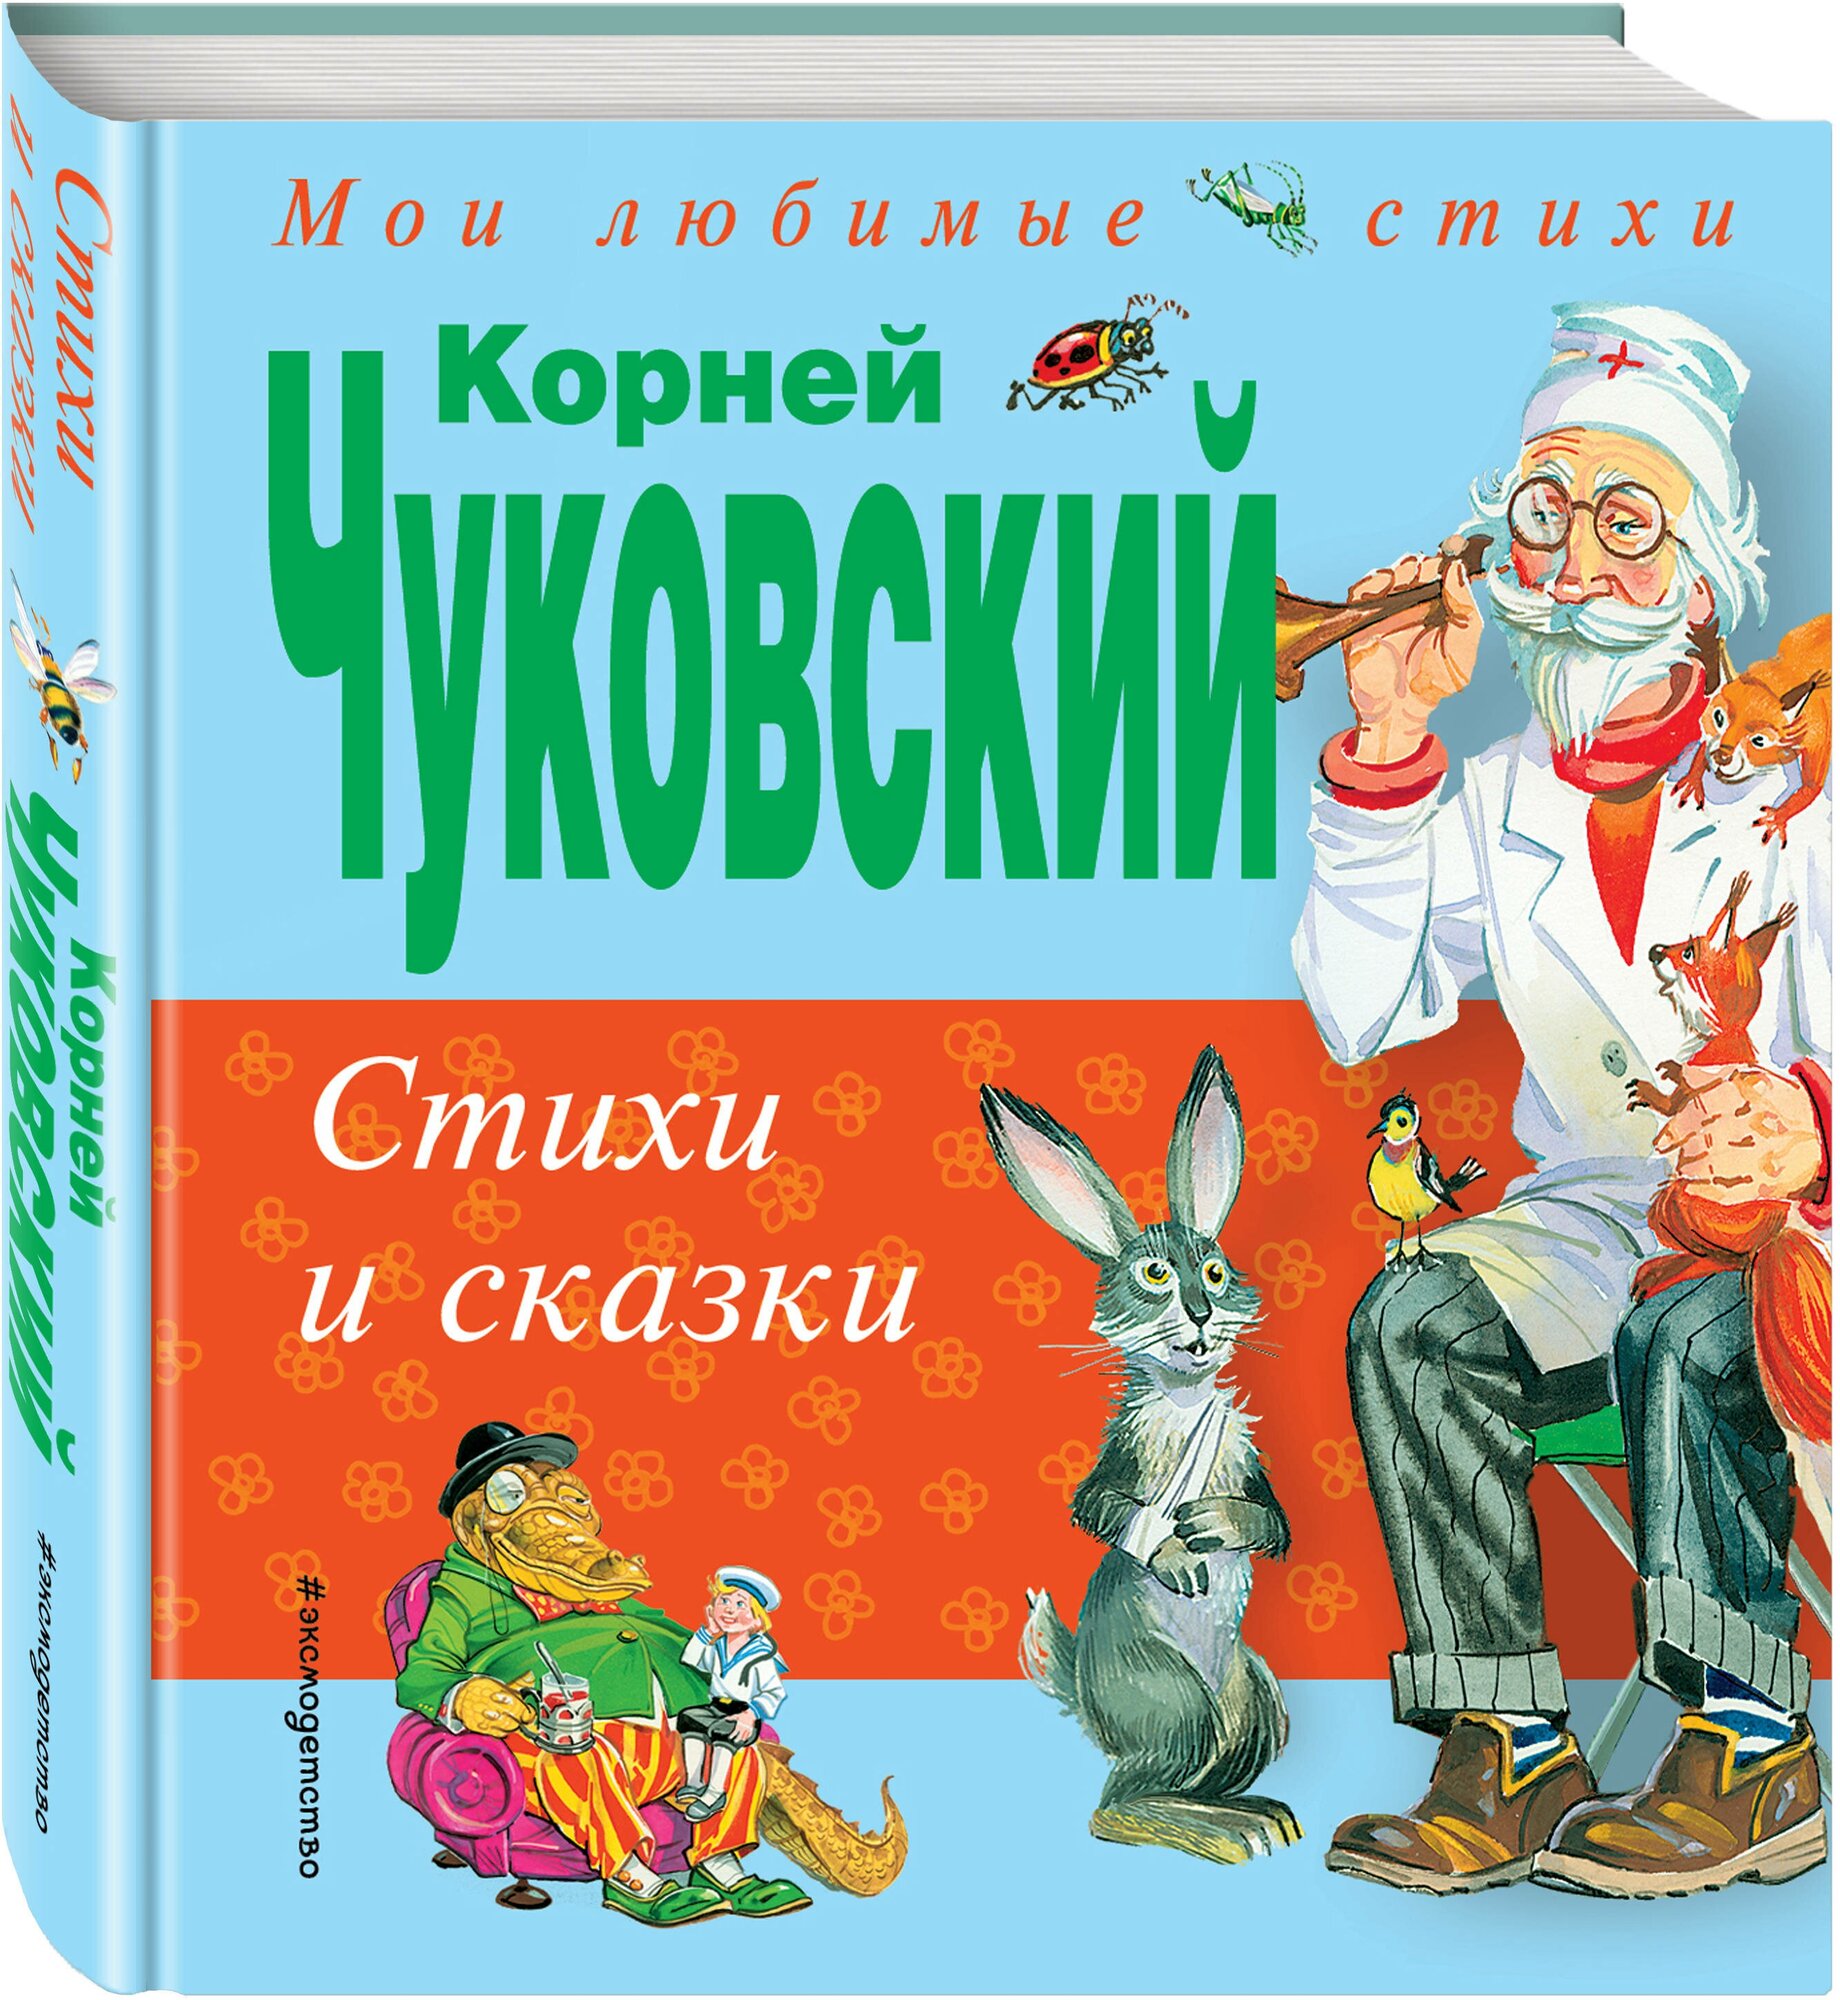 Чуковский К. И. Стихи и сказки